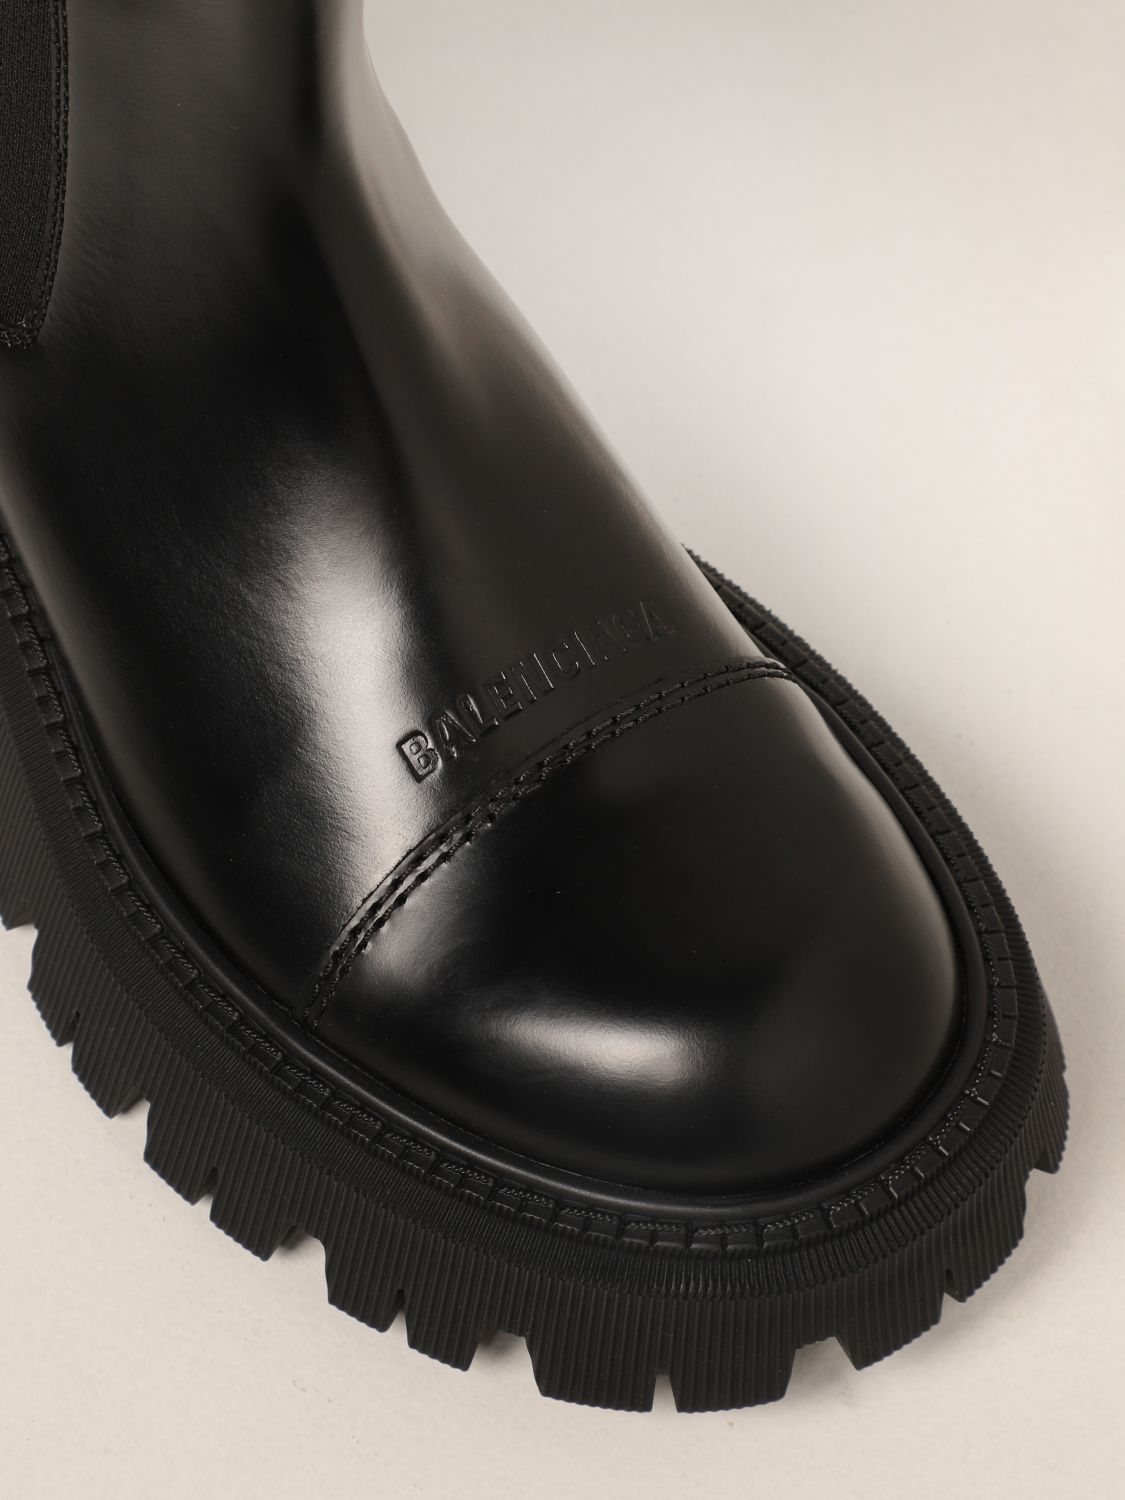 Botines planos Balenciaga: Zapatos mujer Balenciaga negro 4